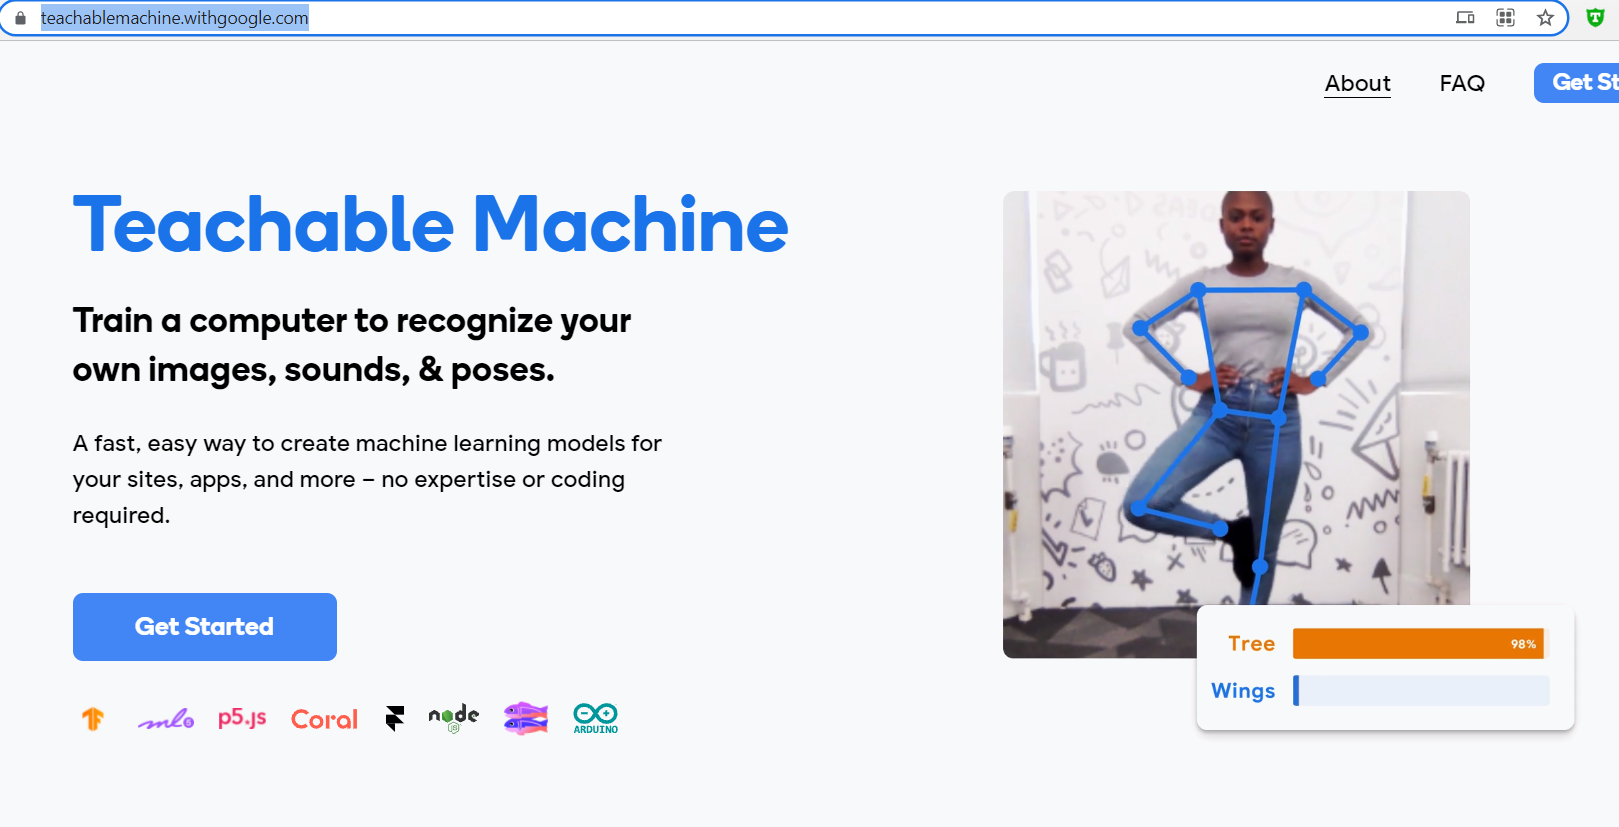 浏览器玩转机器学习之：Teachable Machine (图像/语音/姿态识别)